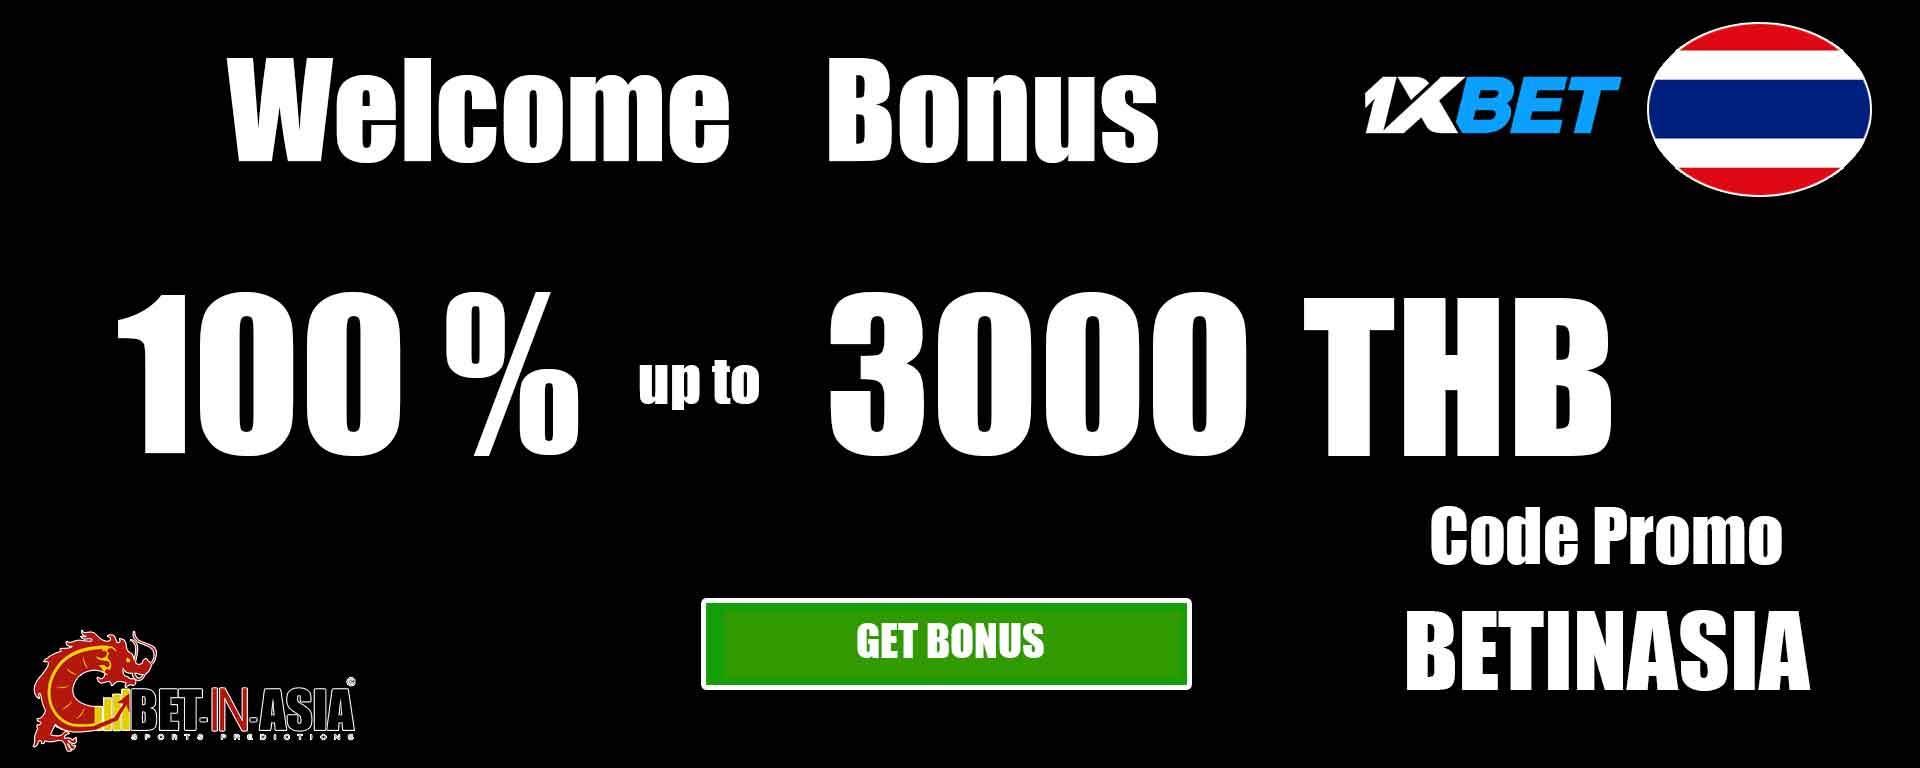 1xbet Thailand welcome bonus 100 % on first deposit